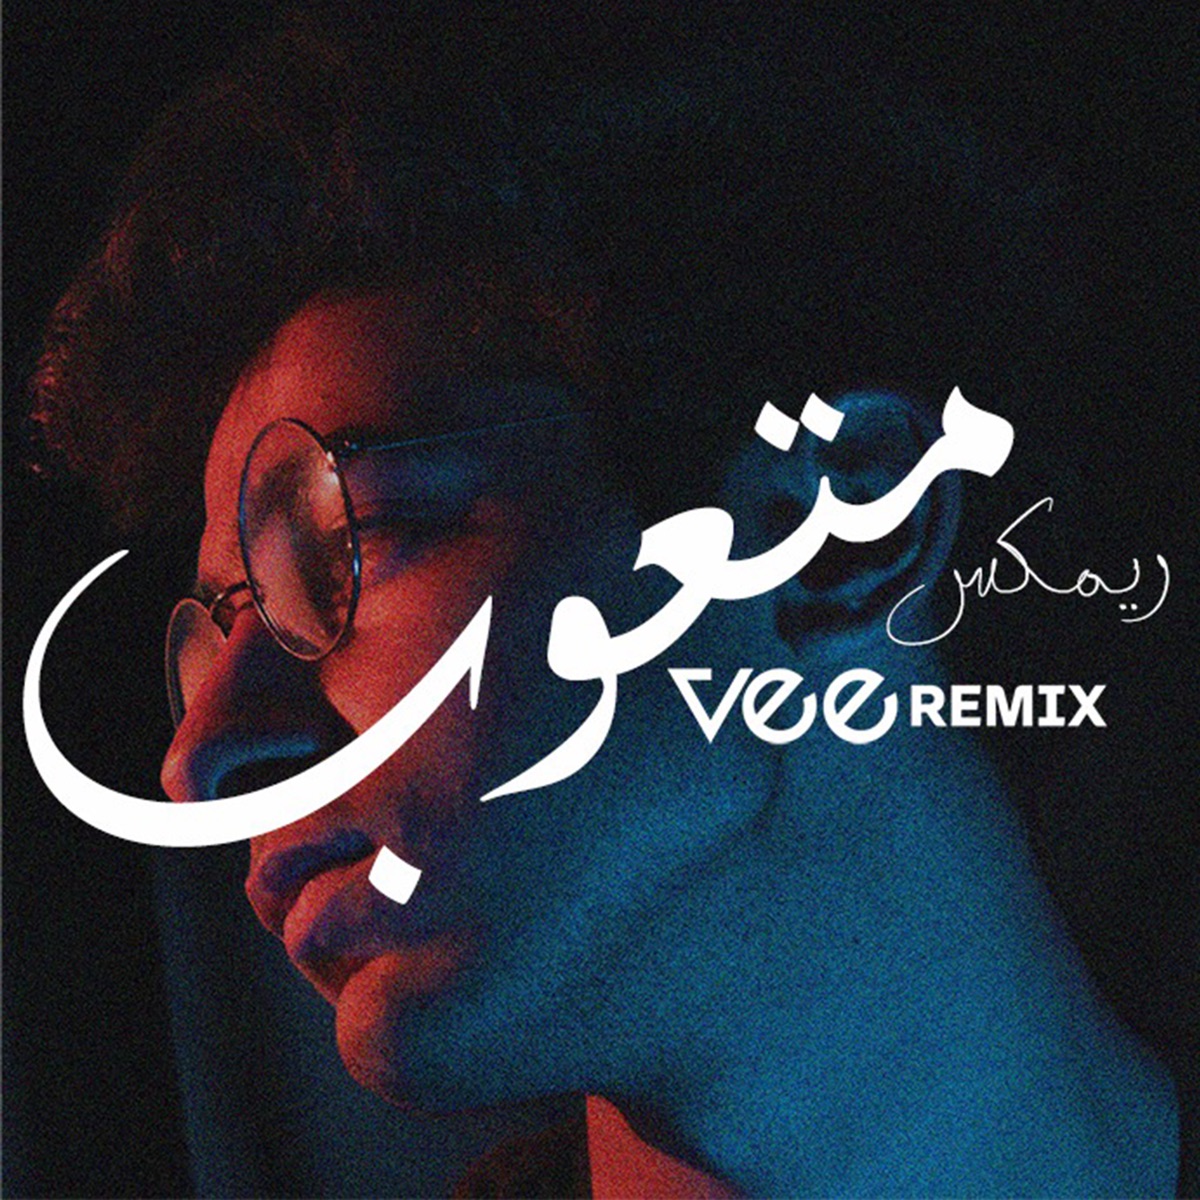 ريمكس ايام ورقة (Remix) - Single - Album by Vee Remix - Apple Music